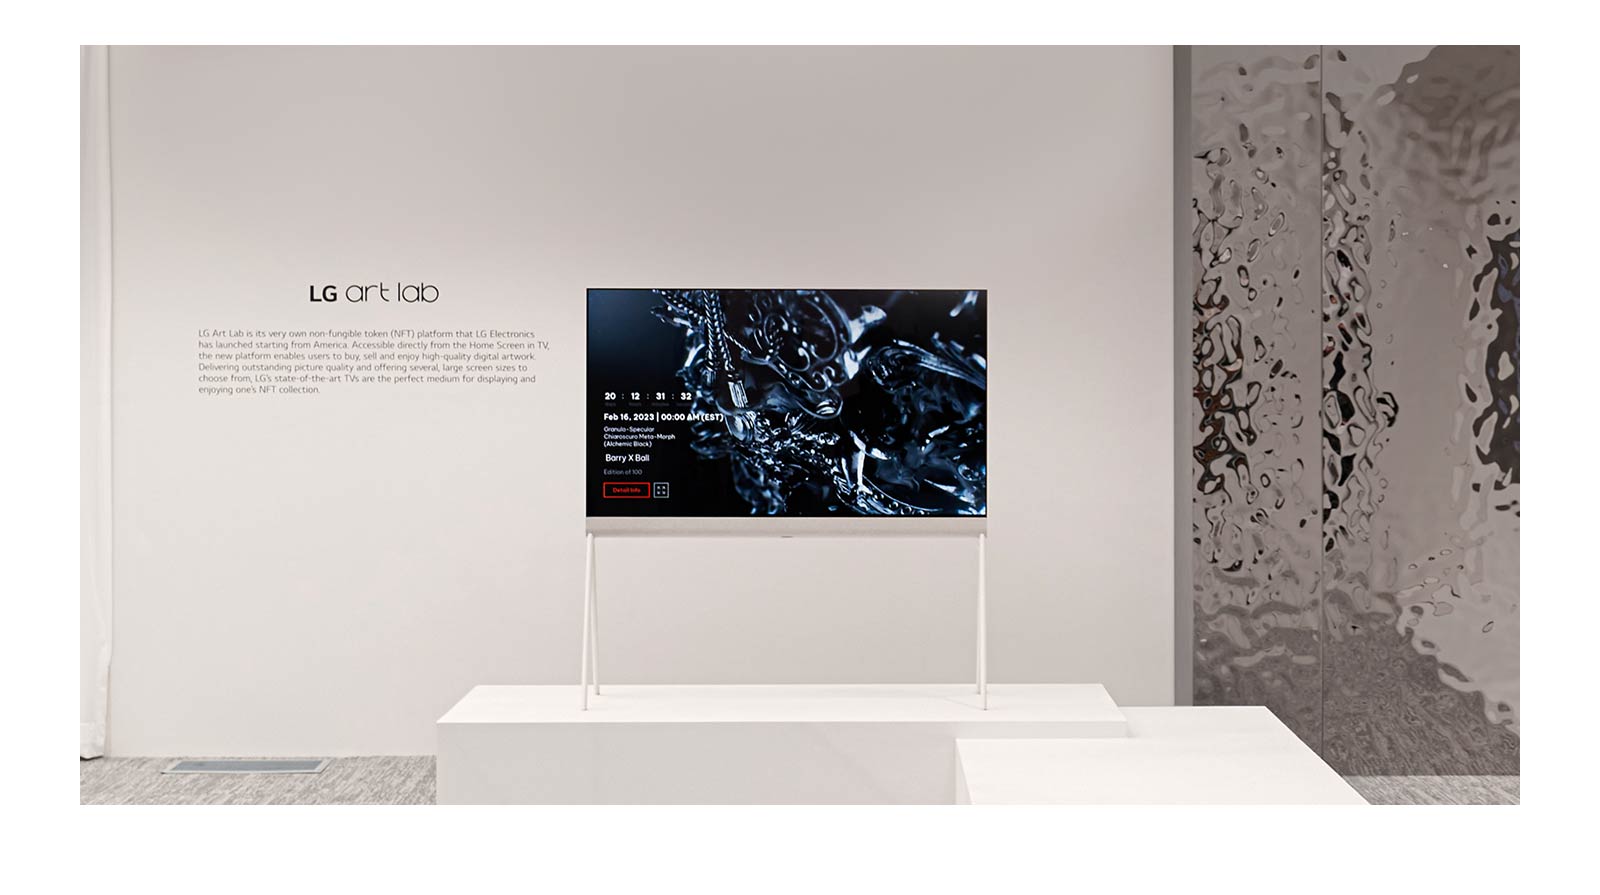 A képen az Easel egy fehér helyiségben egy fekete szobor digitális műalkotását mutatja a képernyőn. A tévé jobb oldalán lévő ezüst fizikai szobron visszatükröződik a helyiség.